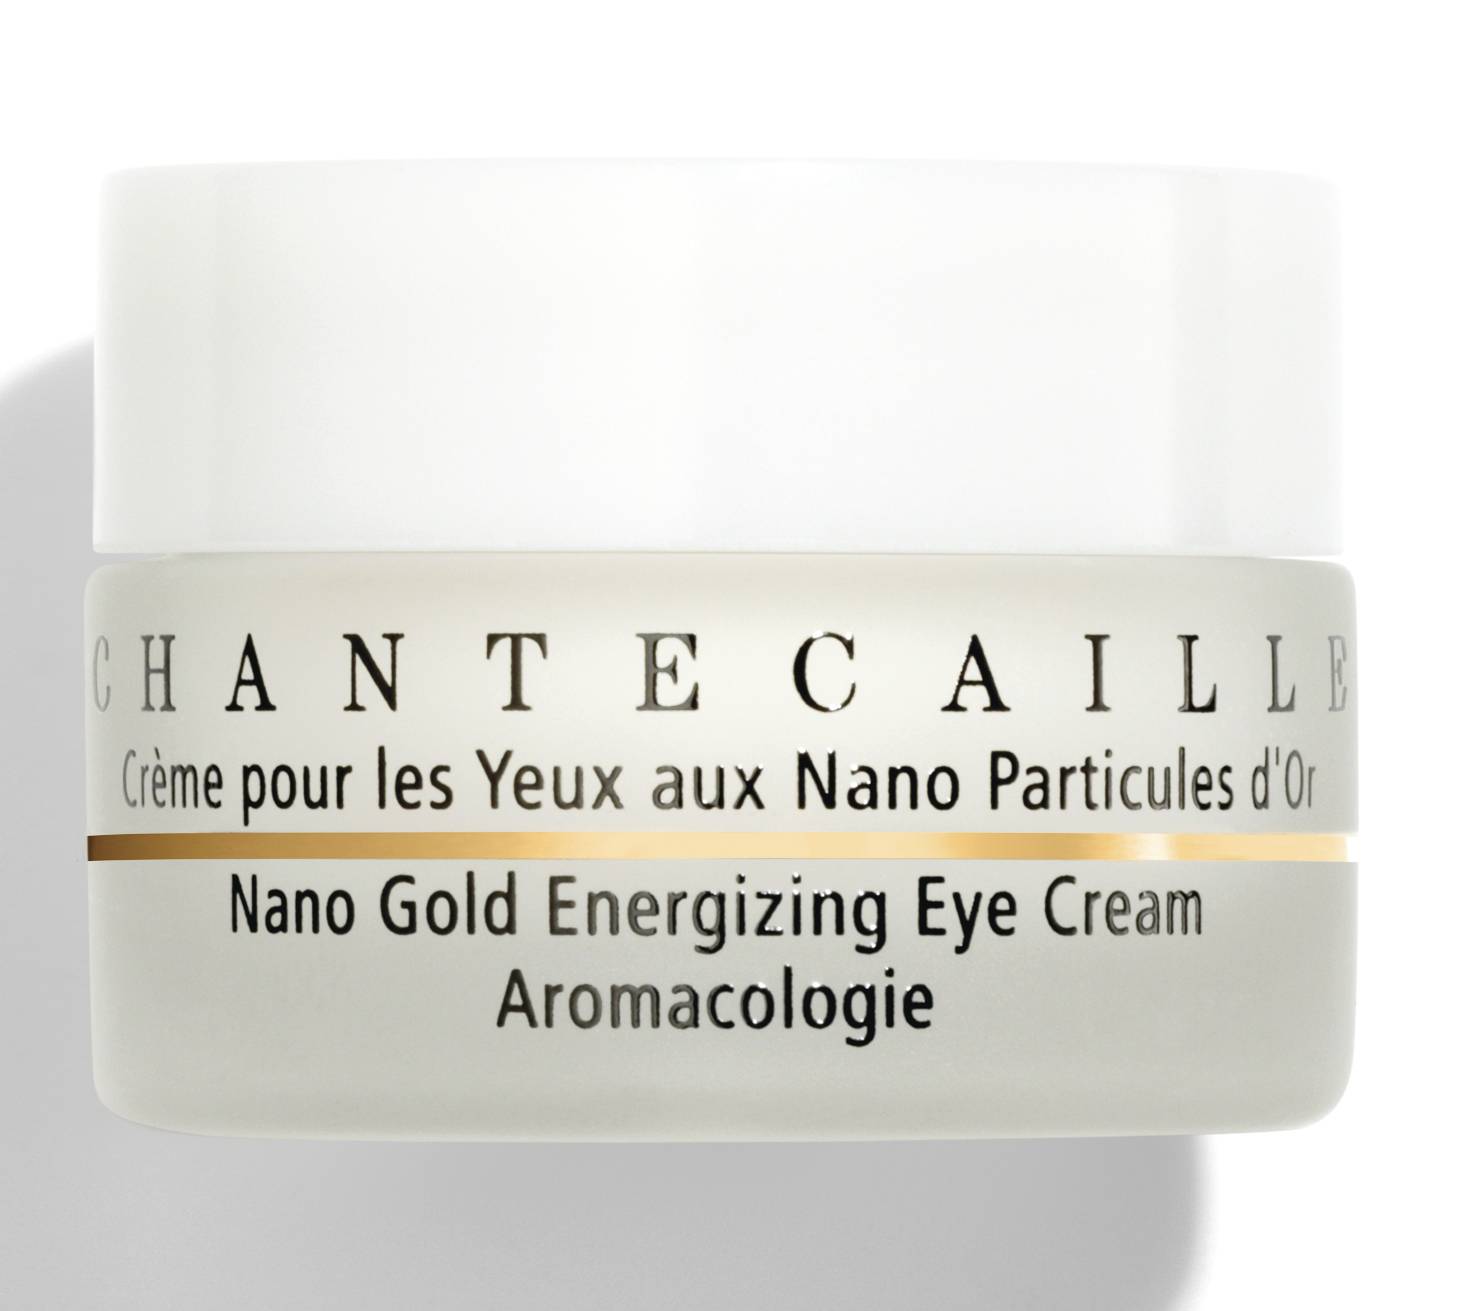 Chantecaille Nano Gold energizing eye cream